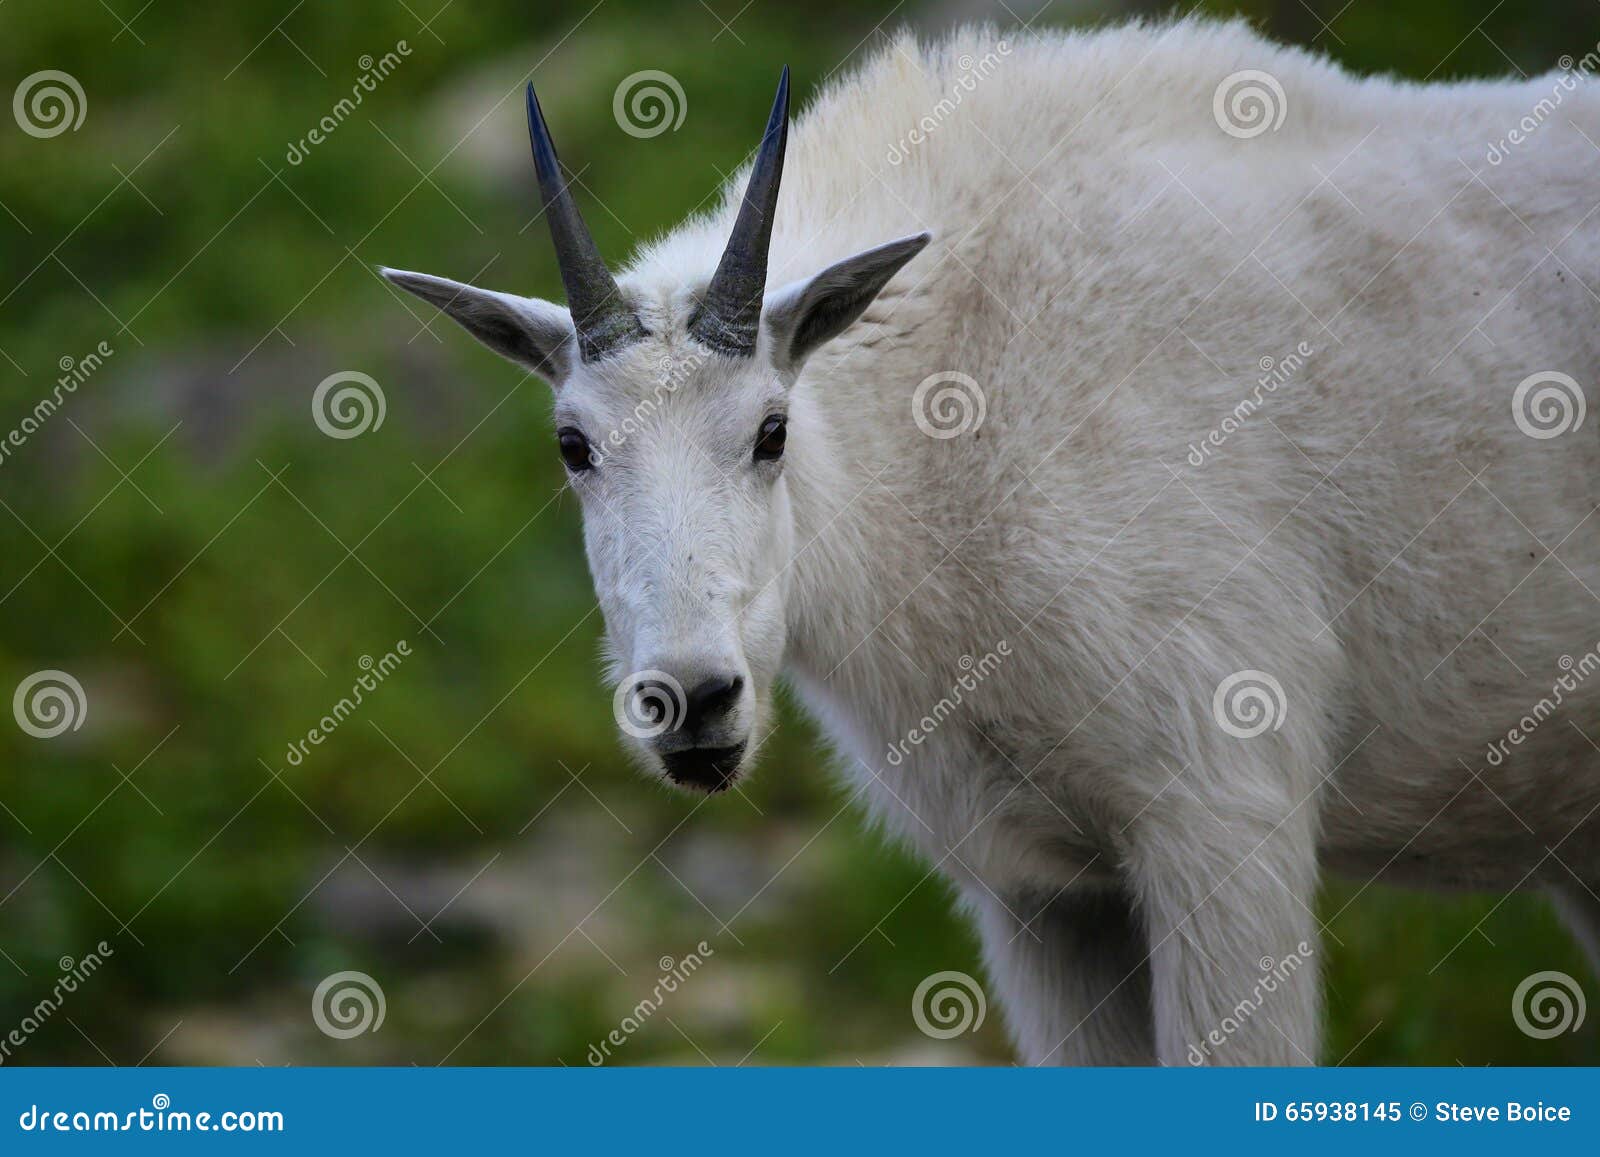 mountain goat at logan pass